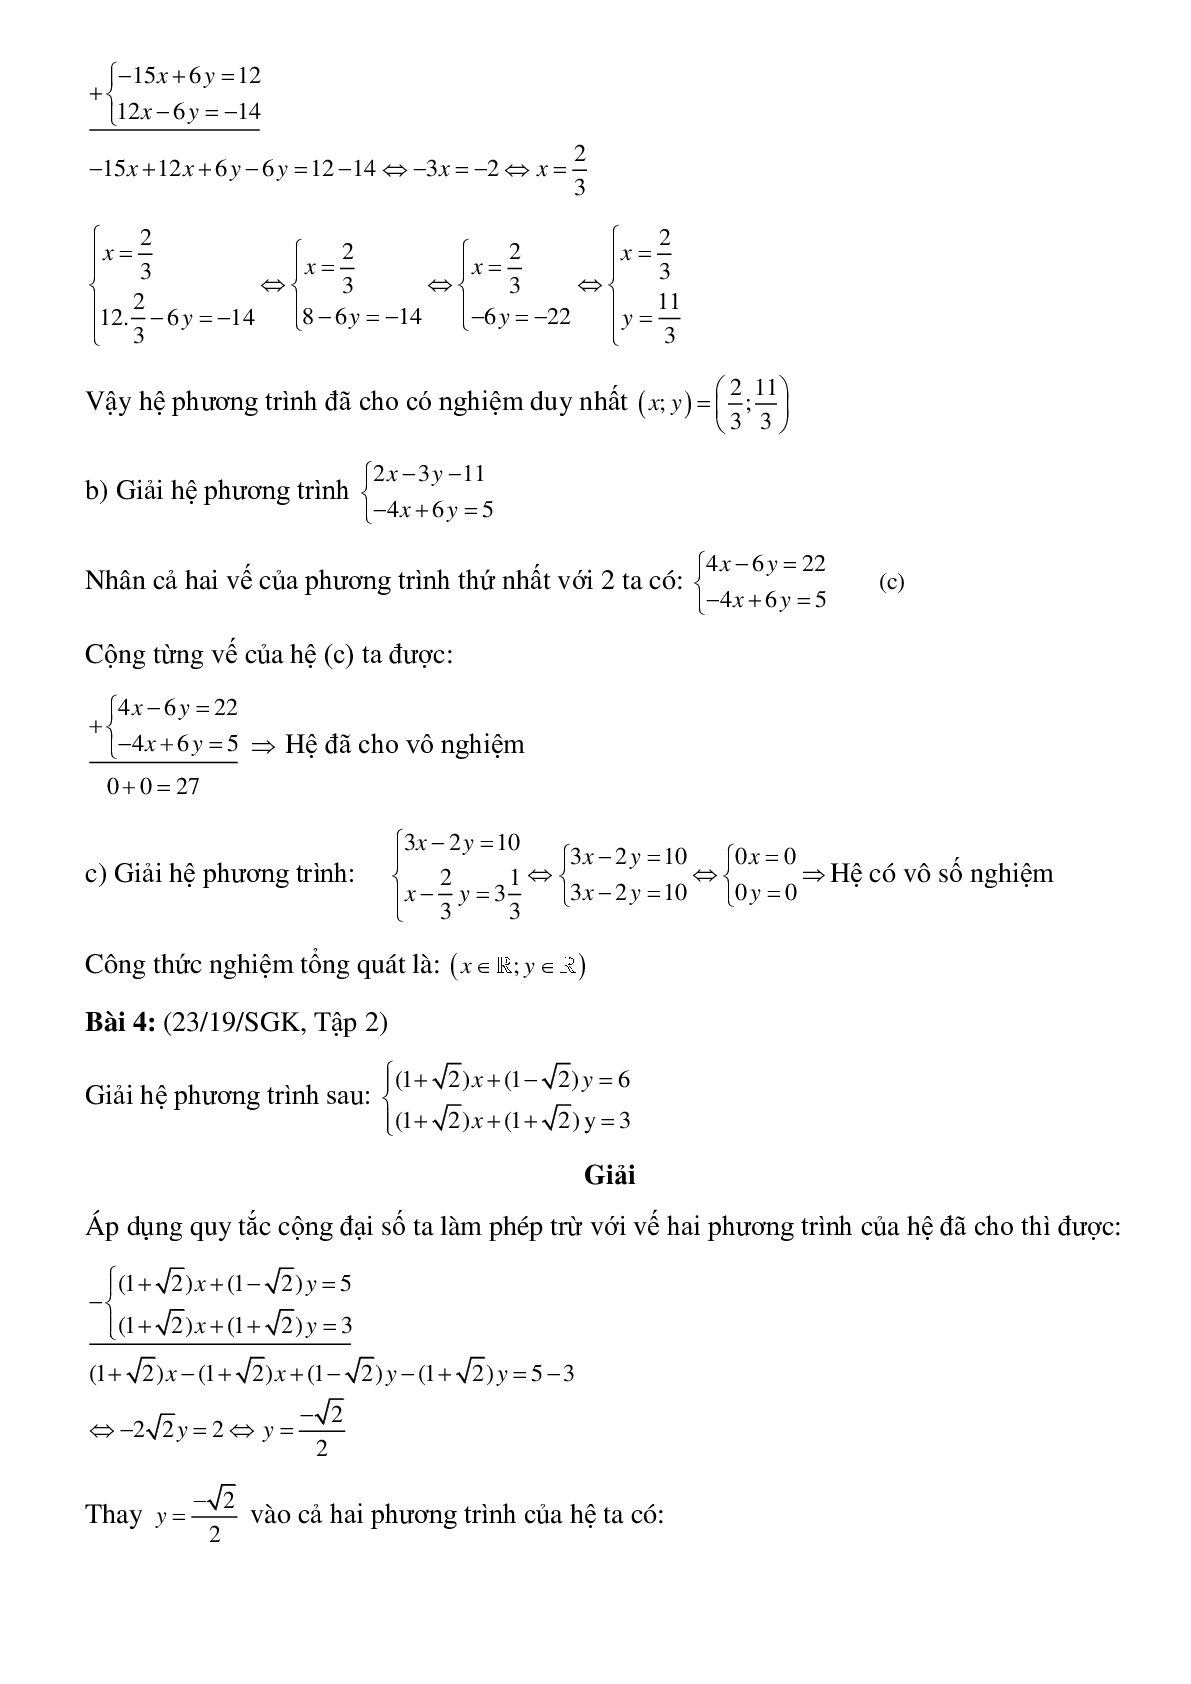 Bài tập Giải hệ phương trình bằng phương pháp đại số (trang 5)